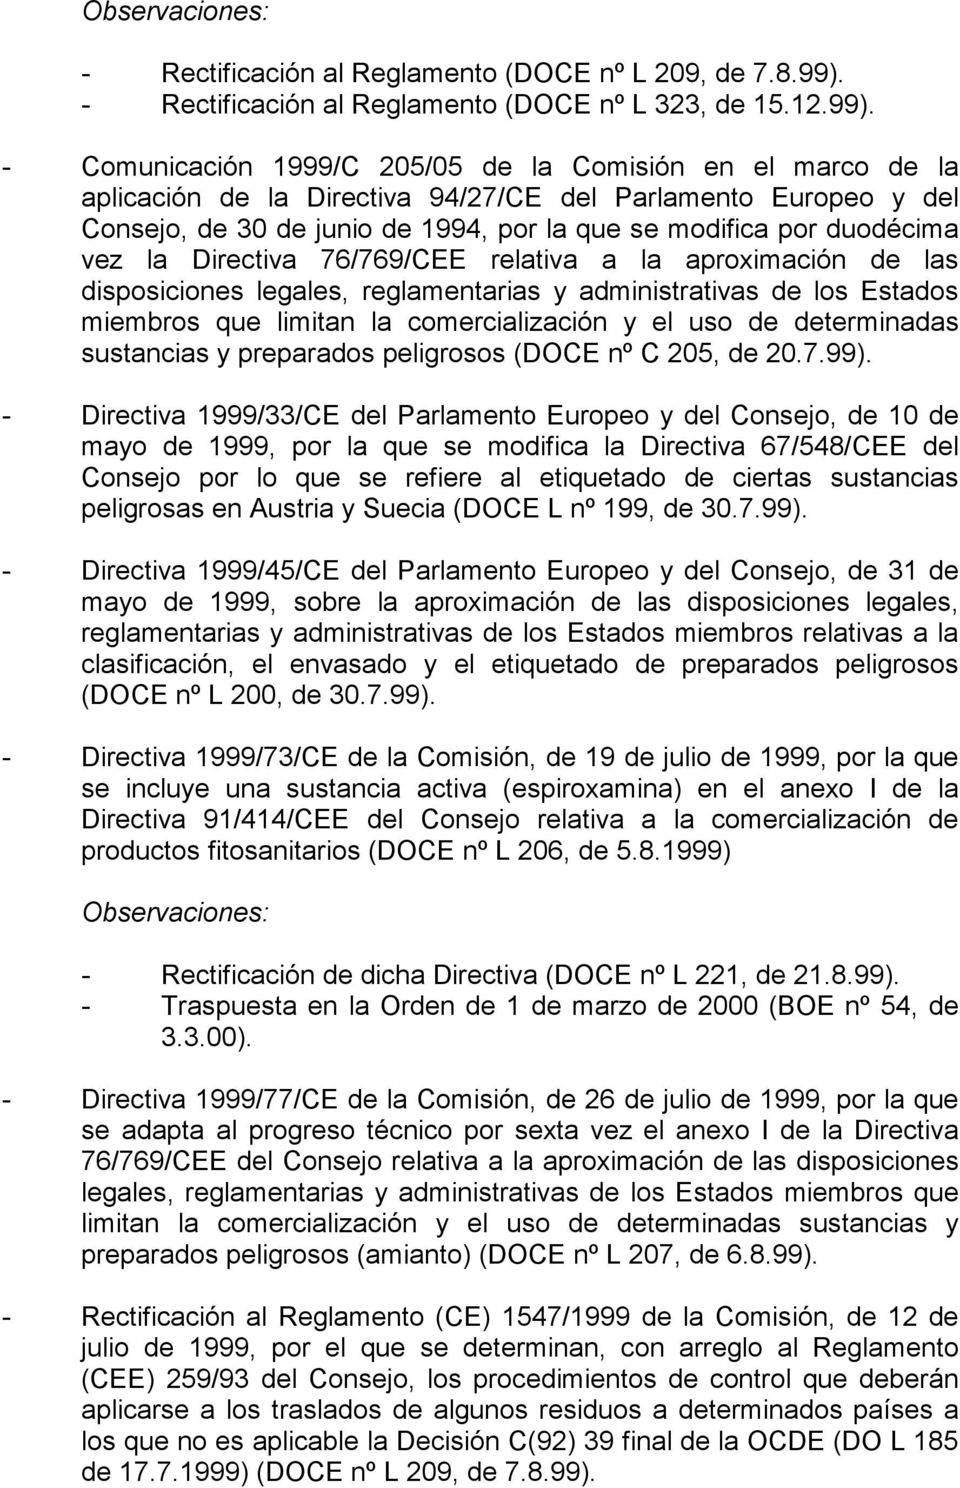 - Comunicación 1999/C 205/05 de la Comisión en el marco de la aplicación de la Directiva 94/27/CE del Parlamento Europeo y del Consejo, de 30 de junio de 1994, por la que se modifica por duodécima